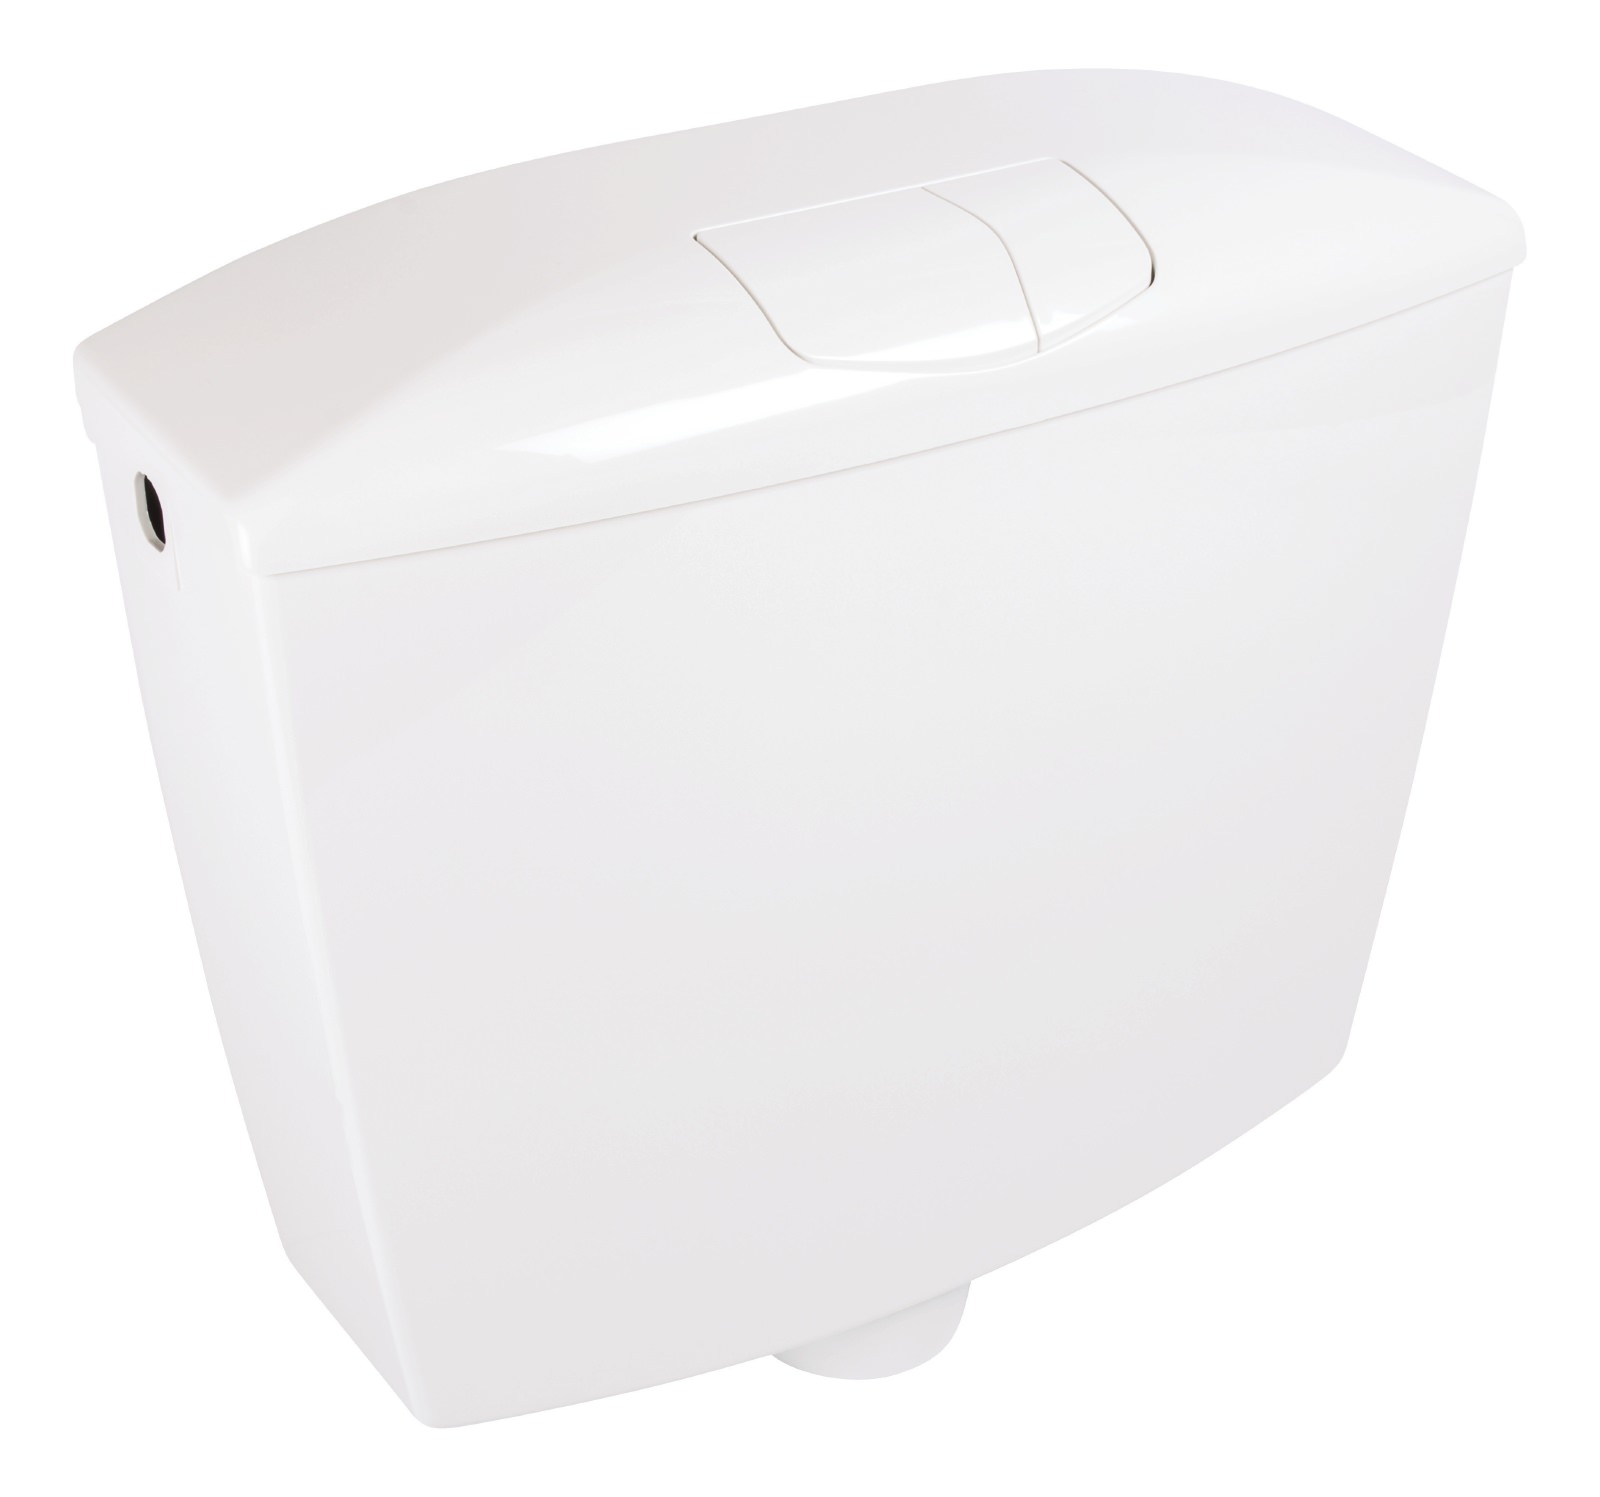 Spülkasten WC Wellness in Weiß, wassersparend mit 2-Mengen-Spülung, vollisoliert aus Kunststoff